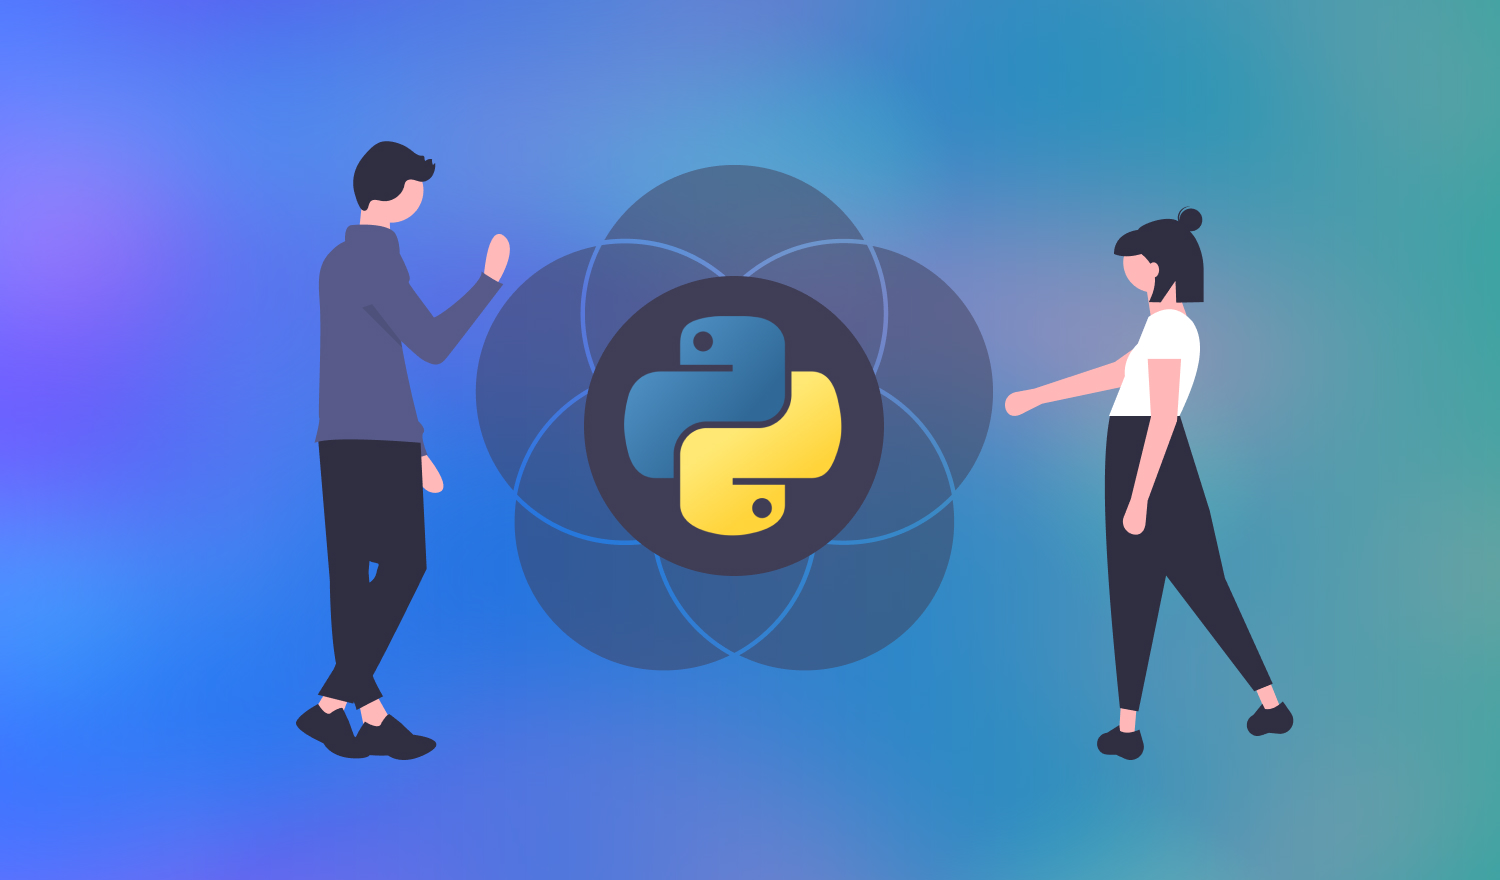 Zwei Personen berühren Venn-Diagramm mit Python-Logo in der Mitte